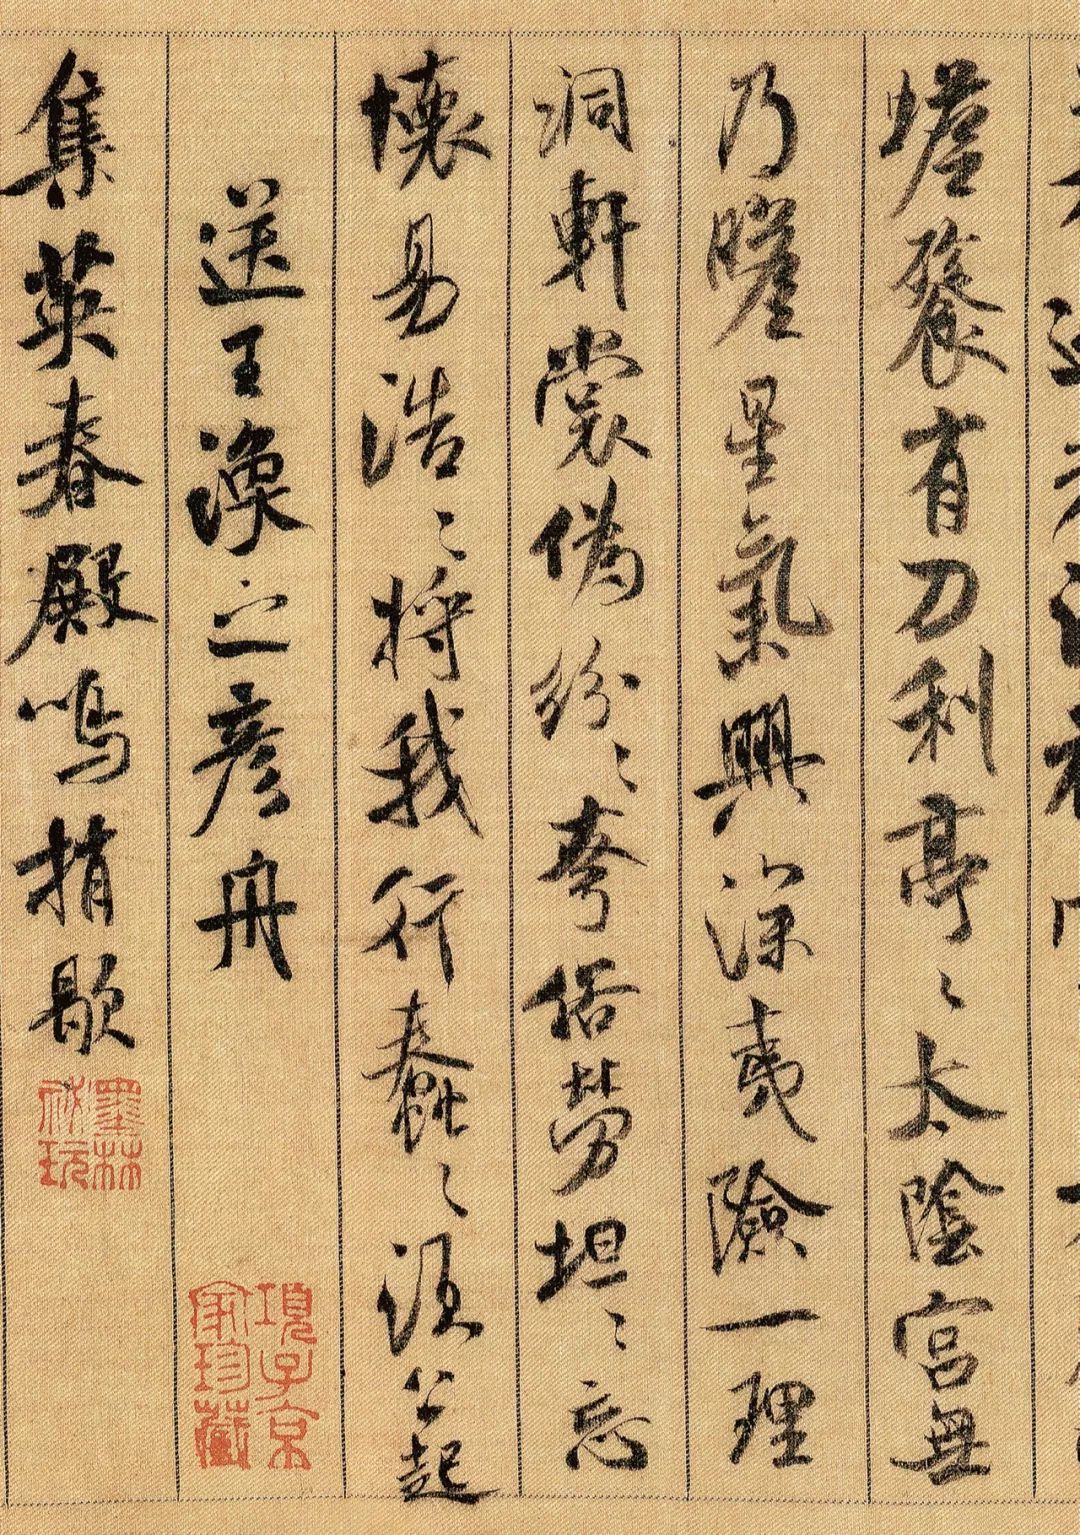 蜀素帖:被后人誉为中华第一美帖,米芾唯一写在丝织品上书作_搜狐文化